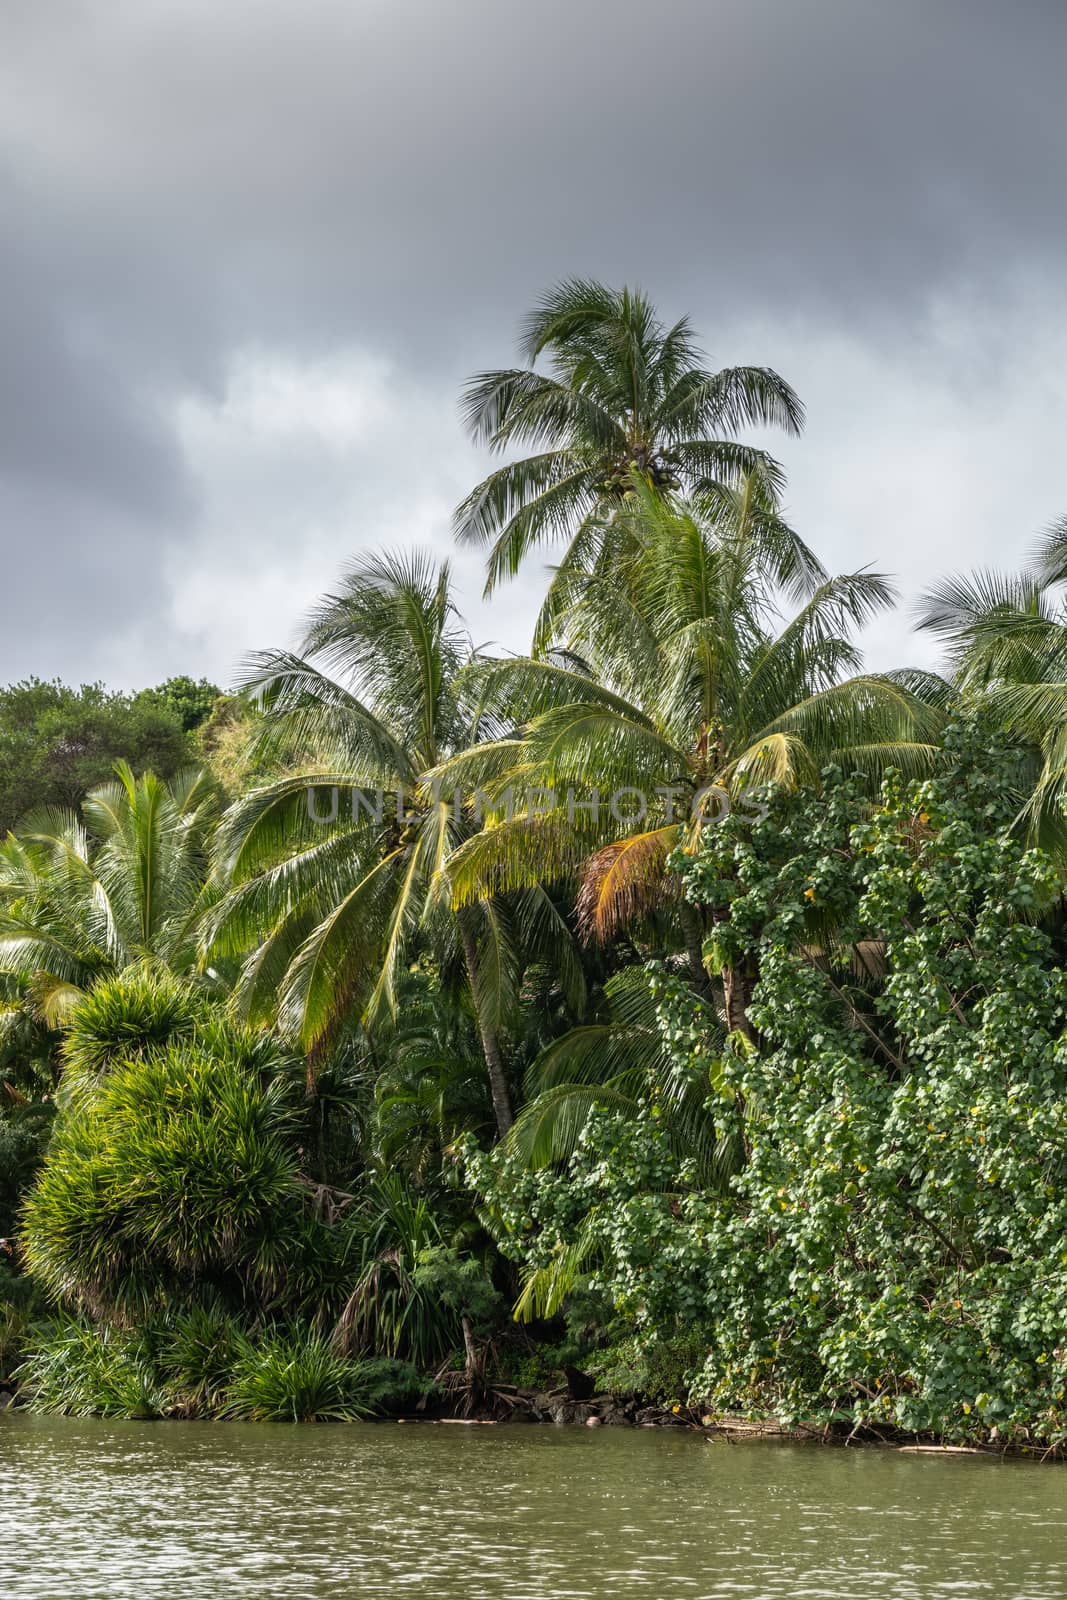 Nawiliwili, Kauai, Hawaii, USA. - January 16, 2020: Palm and other trees along greenish South Fork Wailua River under gray rainy cloudscape.